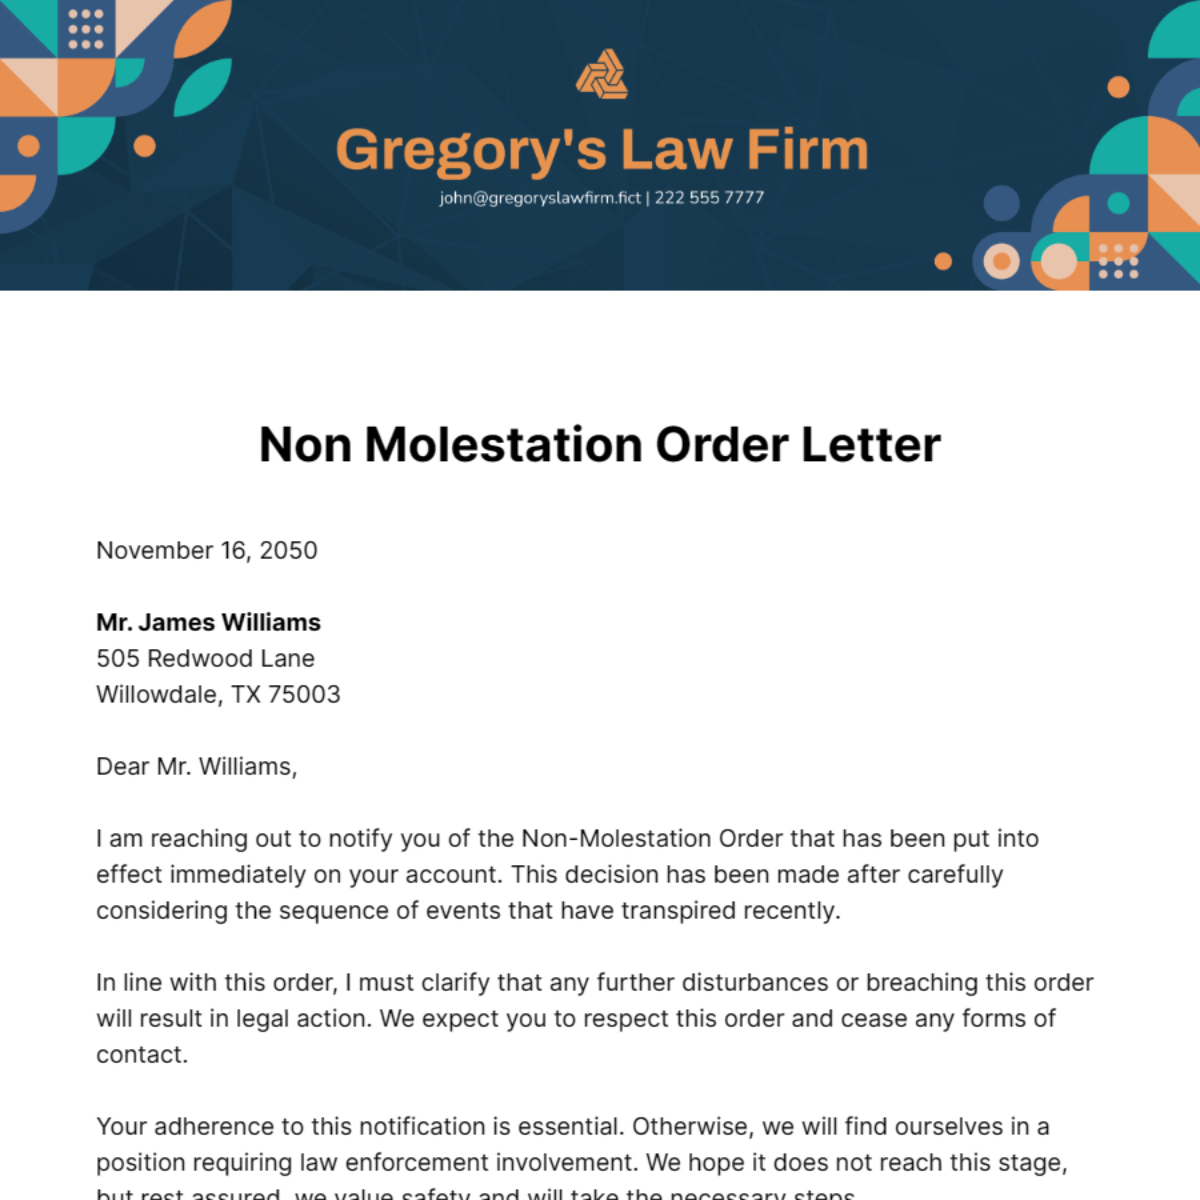 Non Molestation Order Letter Template